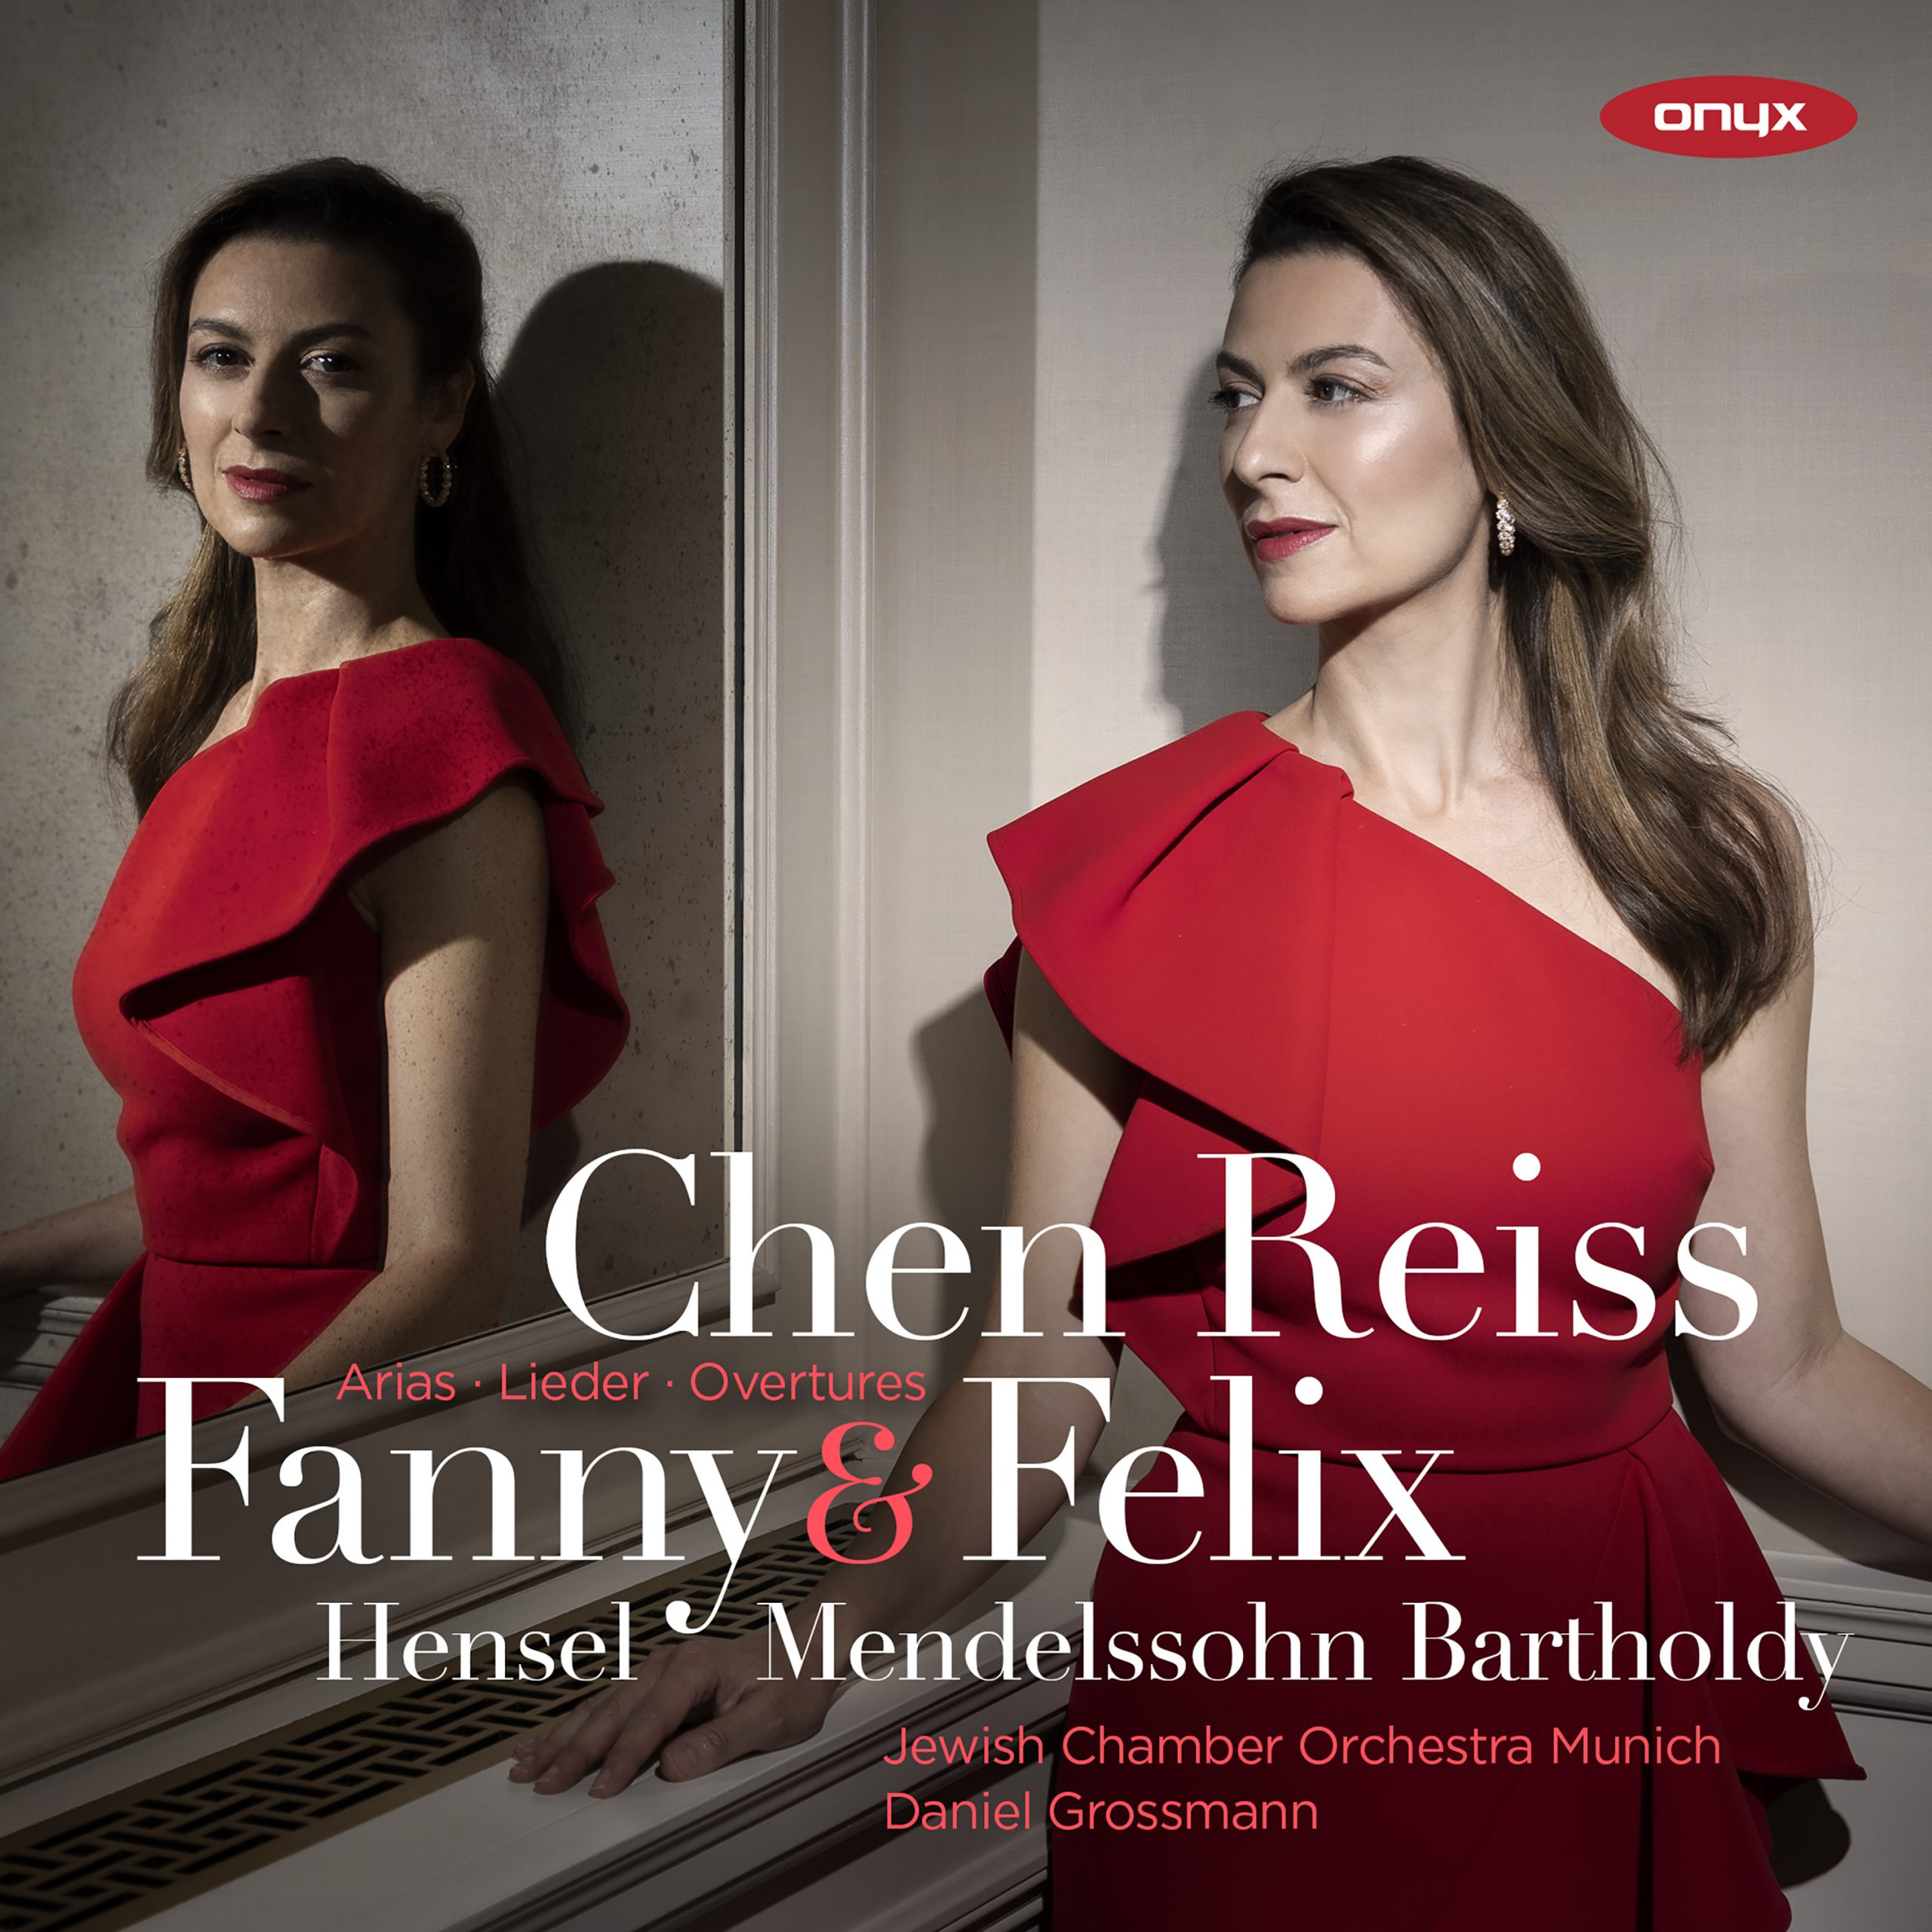 Fanny Hensel & Felix Mendelssohn Bartholdy